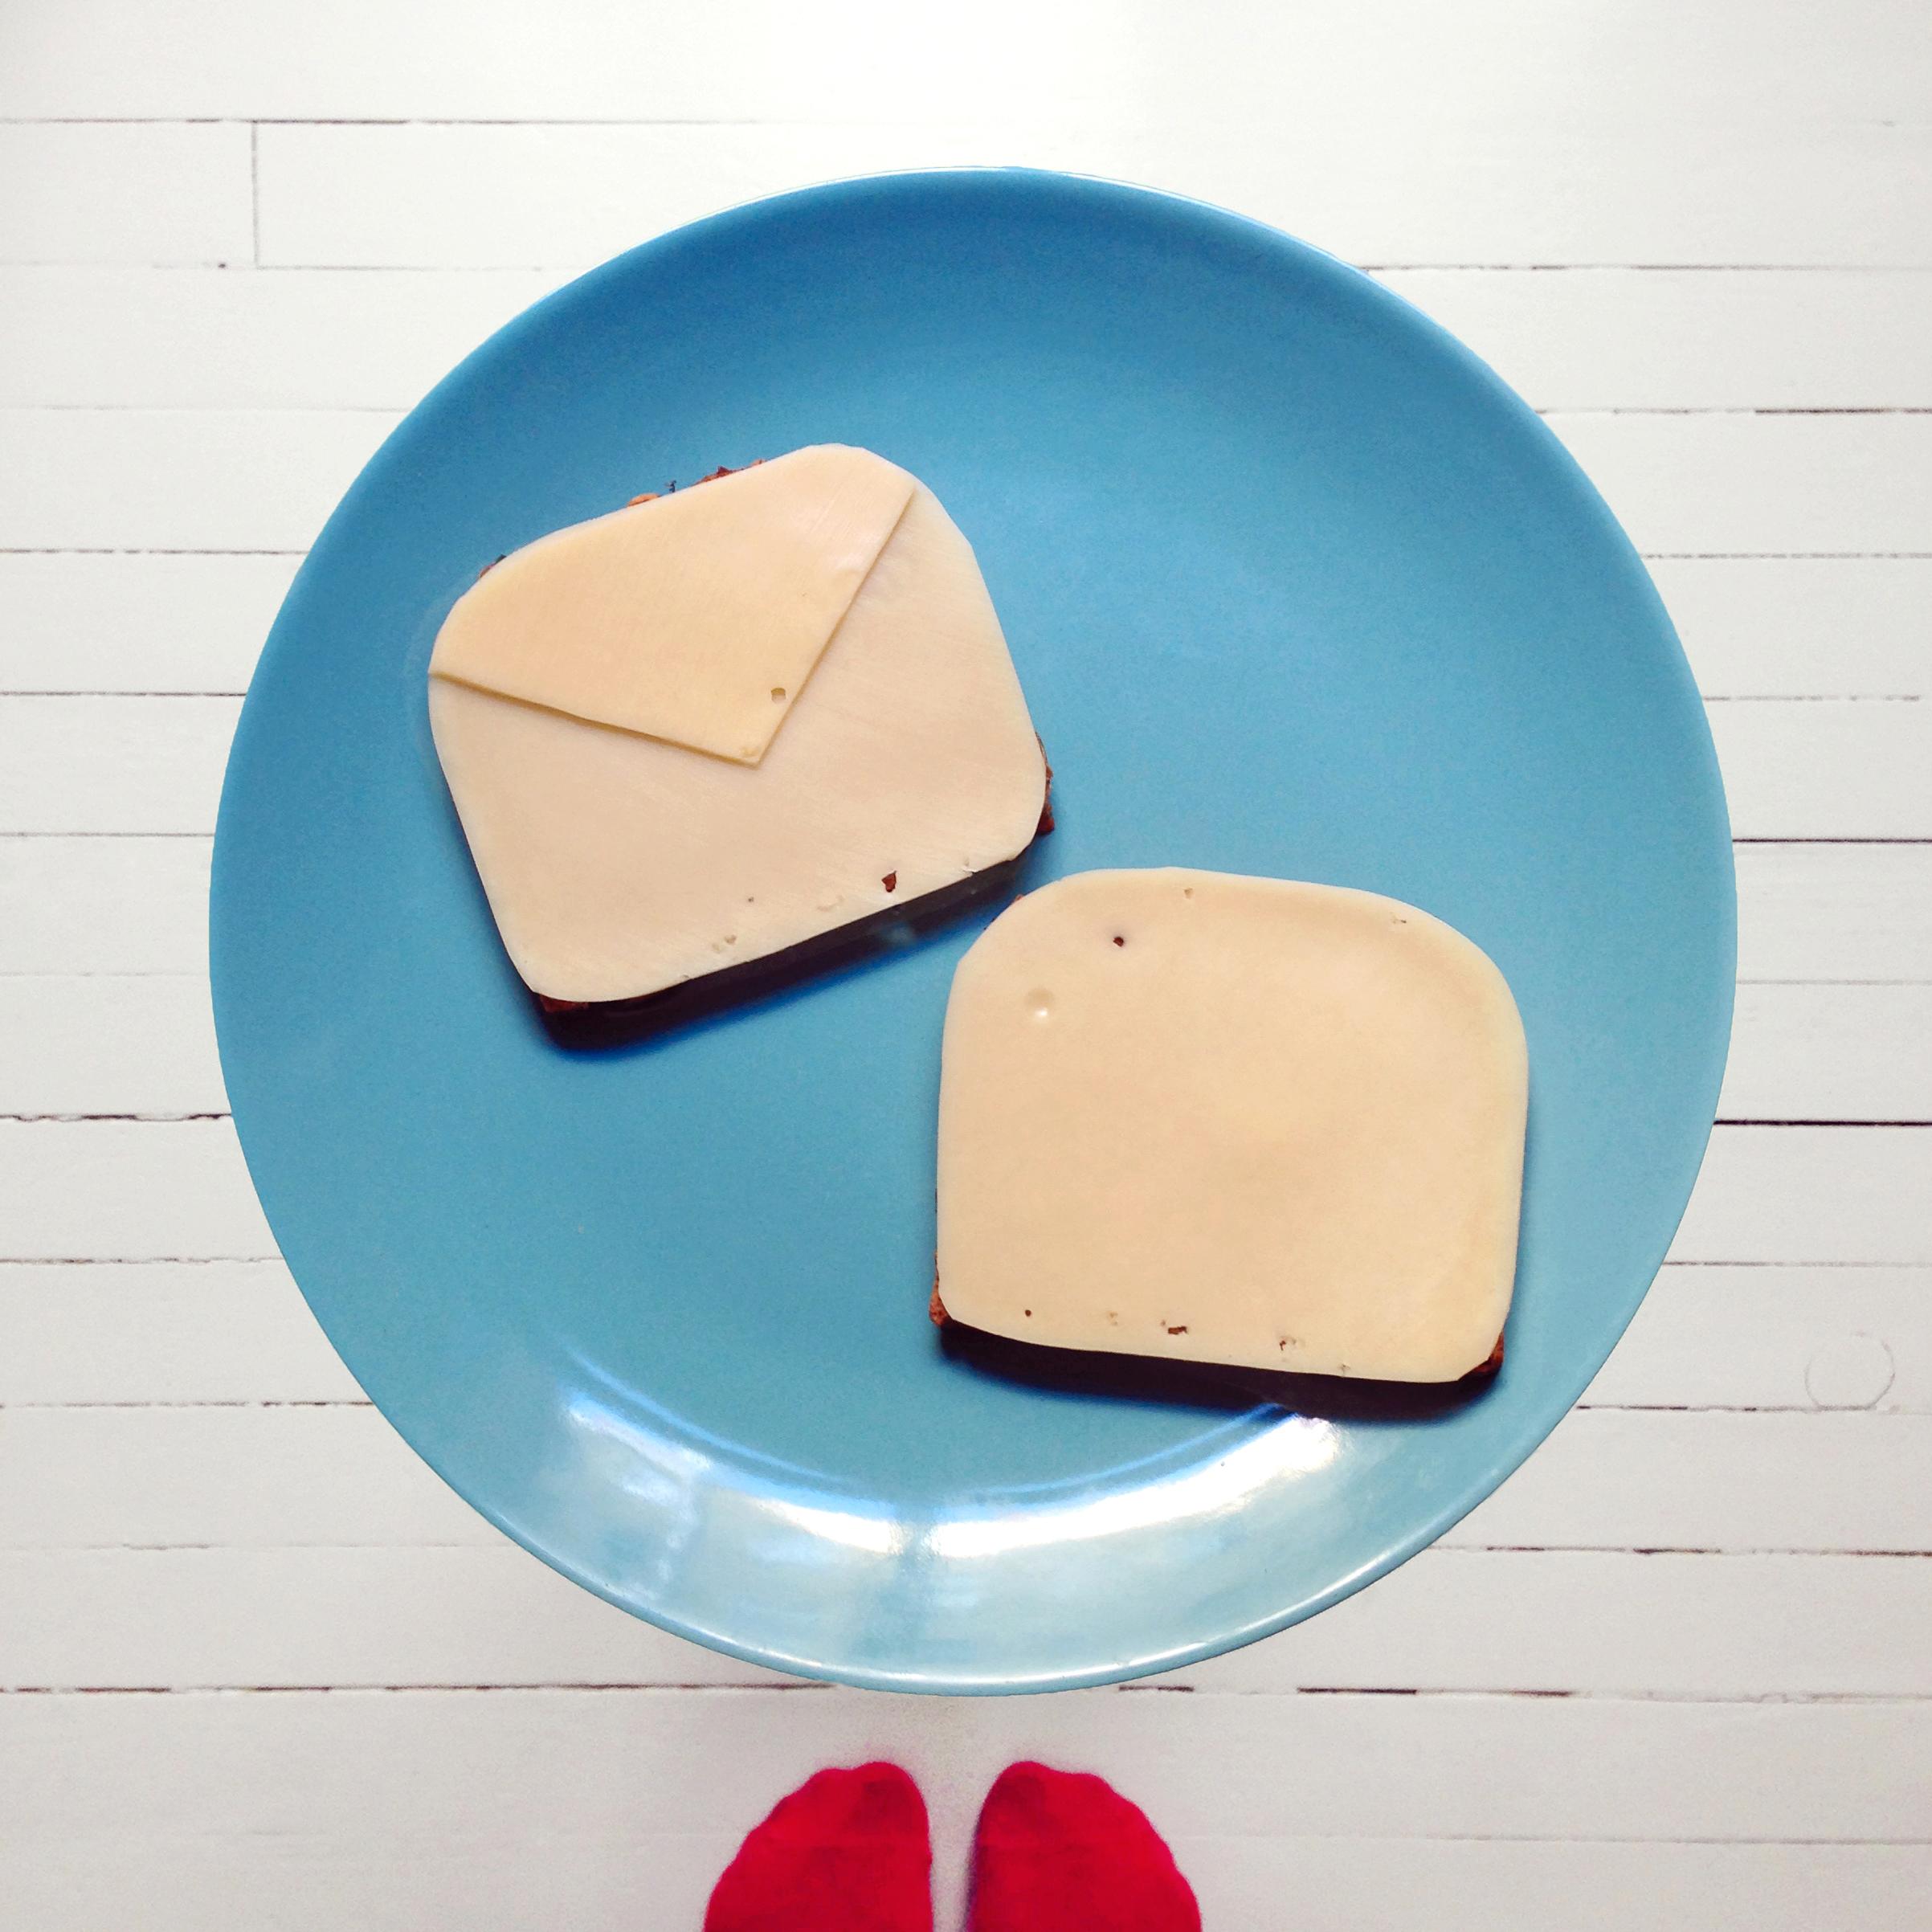 Skjær til osteskivene så de passer på brødskivene. For konvolutten er det to lag, en hel skive med en tilkuttet trekant over, mens «brevarket» kun trenger en hel skive.